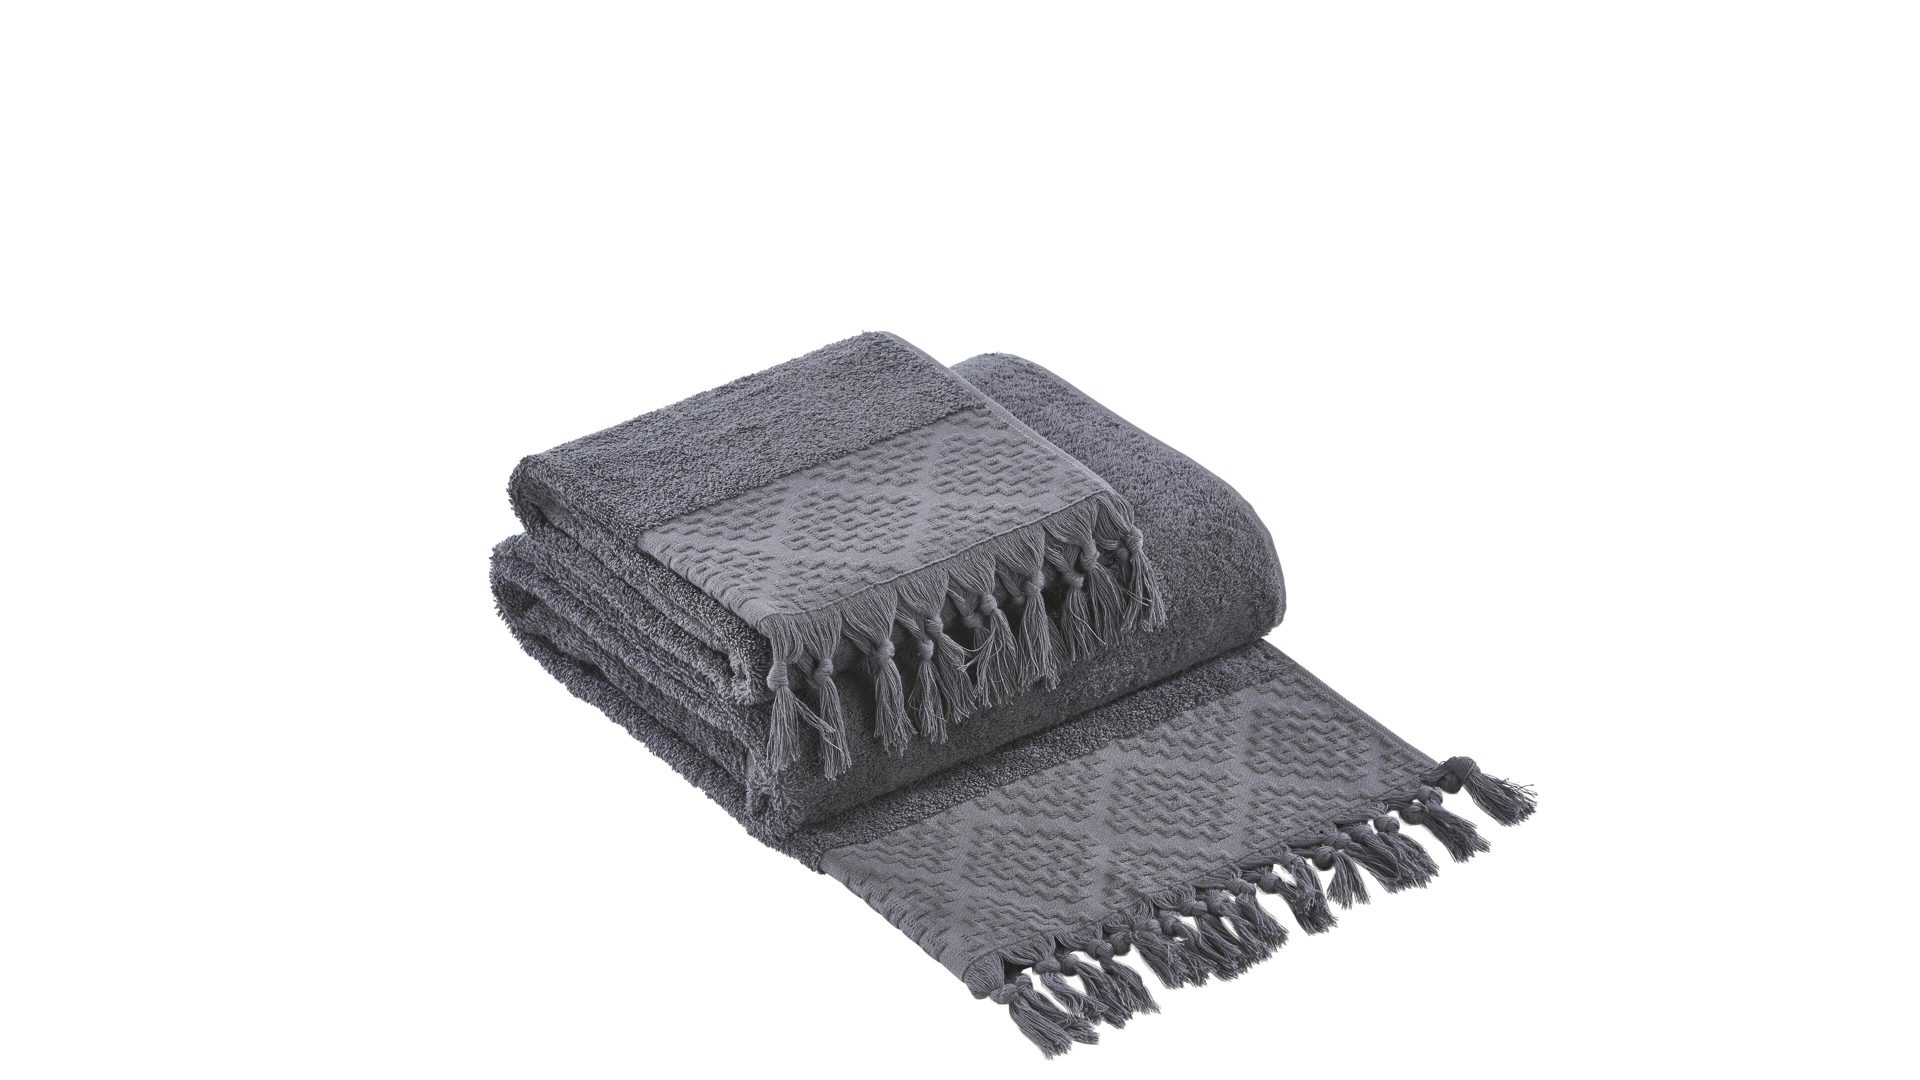 Handtuch-Set Done® by karabel home company aus Stoff in Anthrazit DONE® Handtuch-Set Provence Boheme - Heimtextilien anthrazitfarbene Baumwolle  – zweiteilig